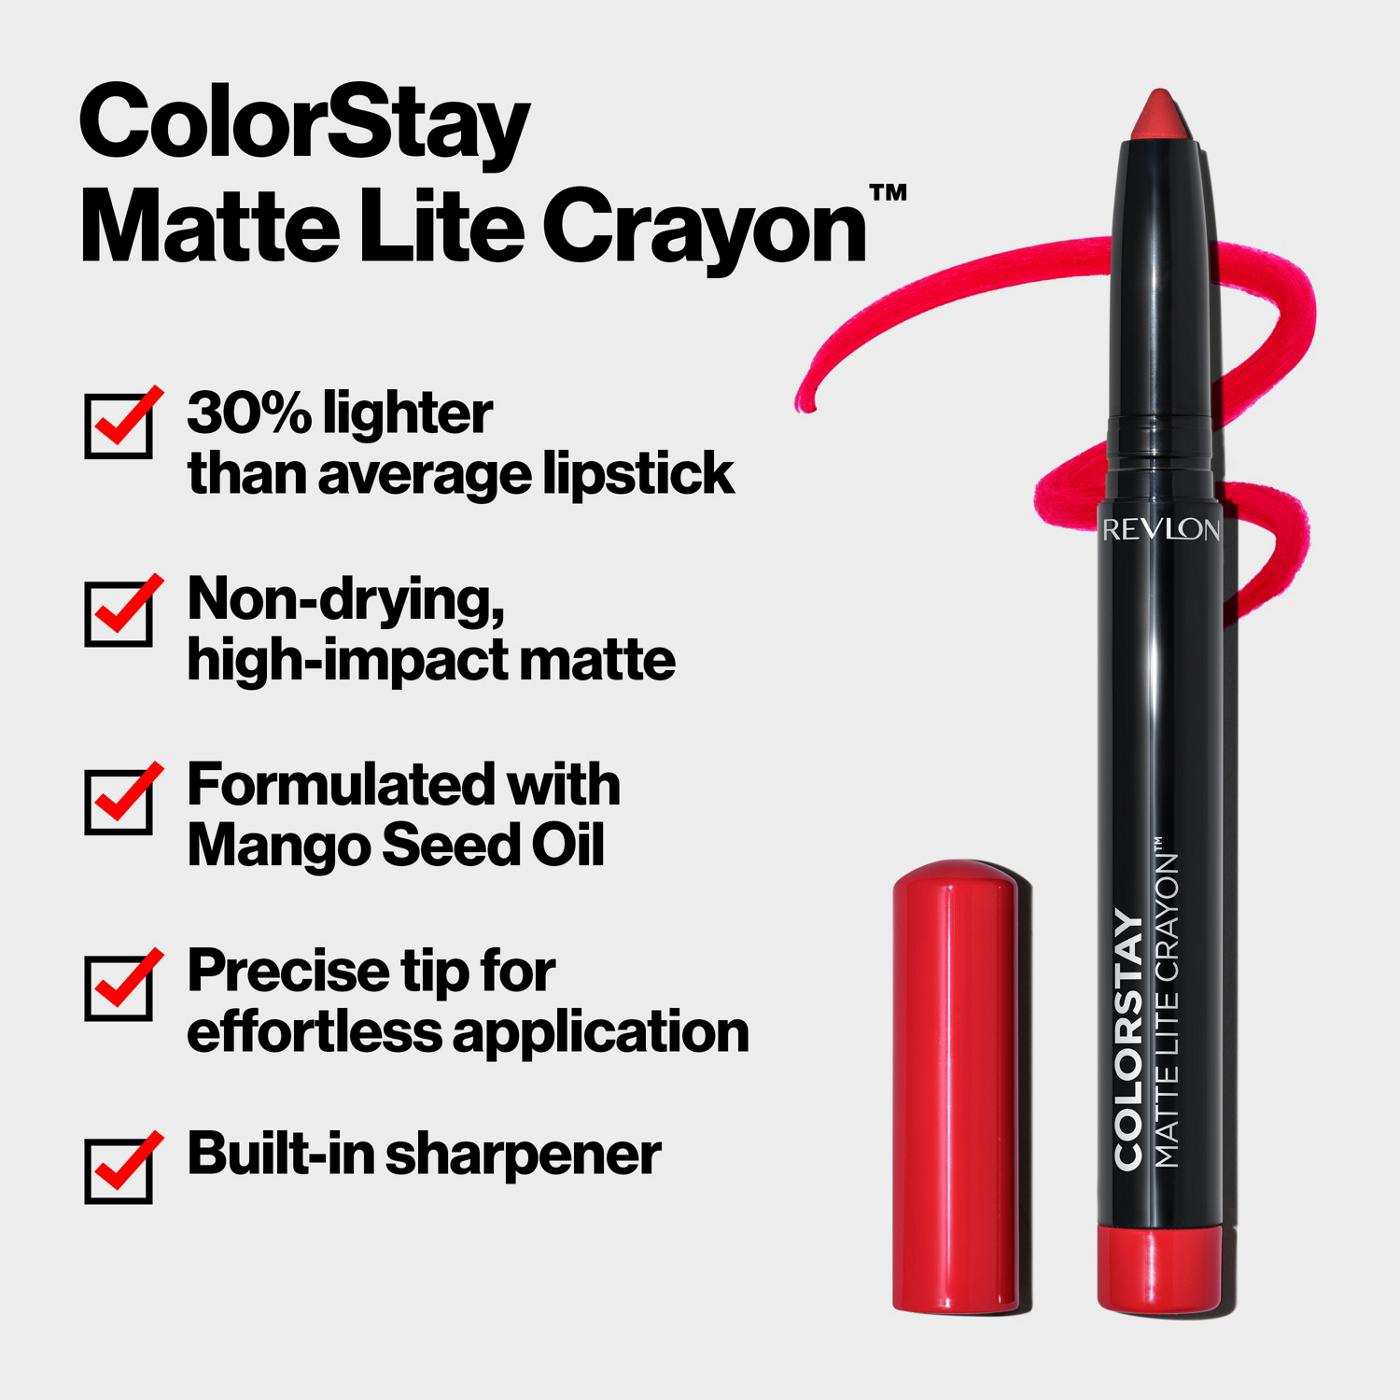 Revlon ColorStay Matte Lite Crayon Lipstick - She's Fly; image 2 of 7